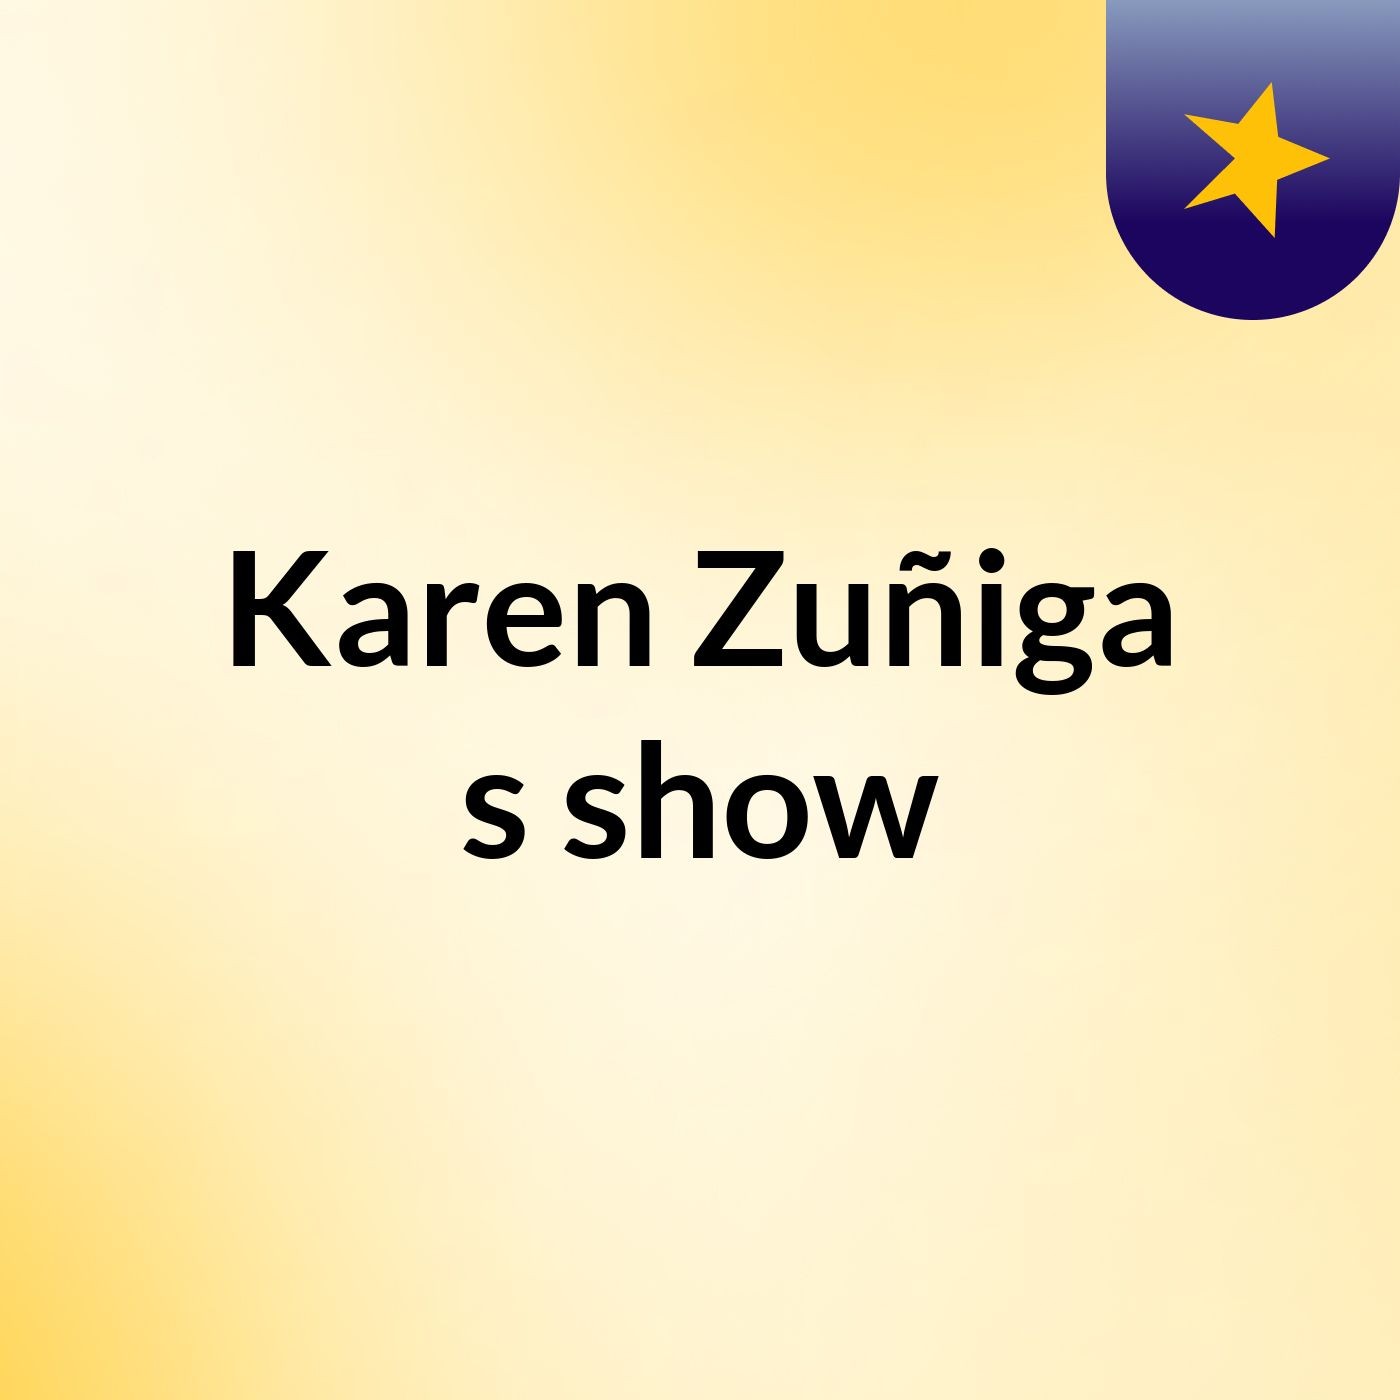 Karen Zuñiga's show